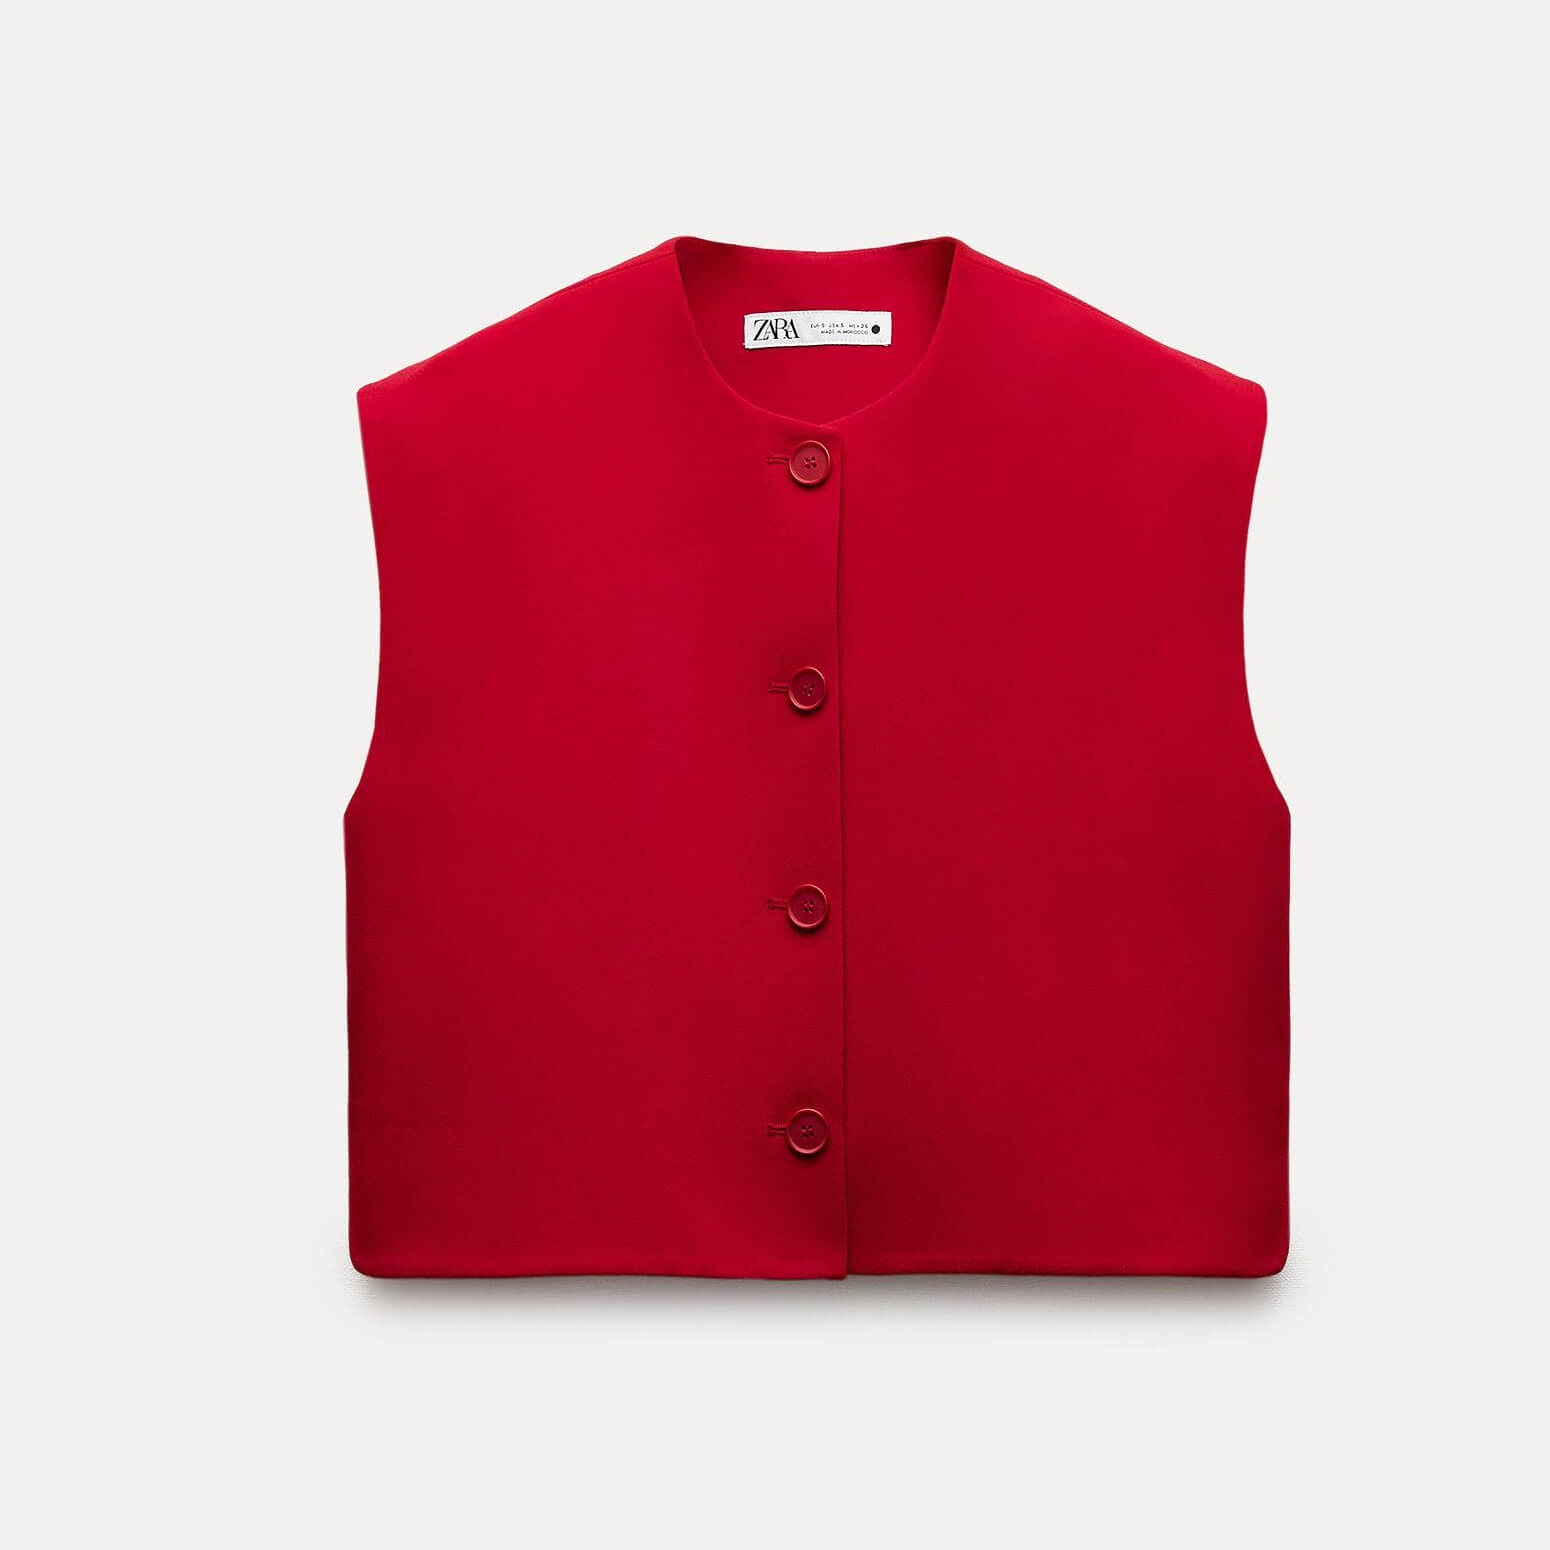 Жилет-топ Zara ZW Collection Buttoned, красный kupuyabe женский жилет топ летний полиэстер шифоновый жилет без рукавов модный повседневный топ